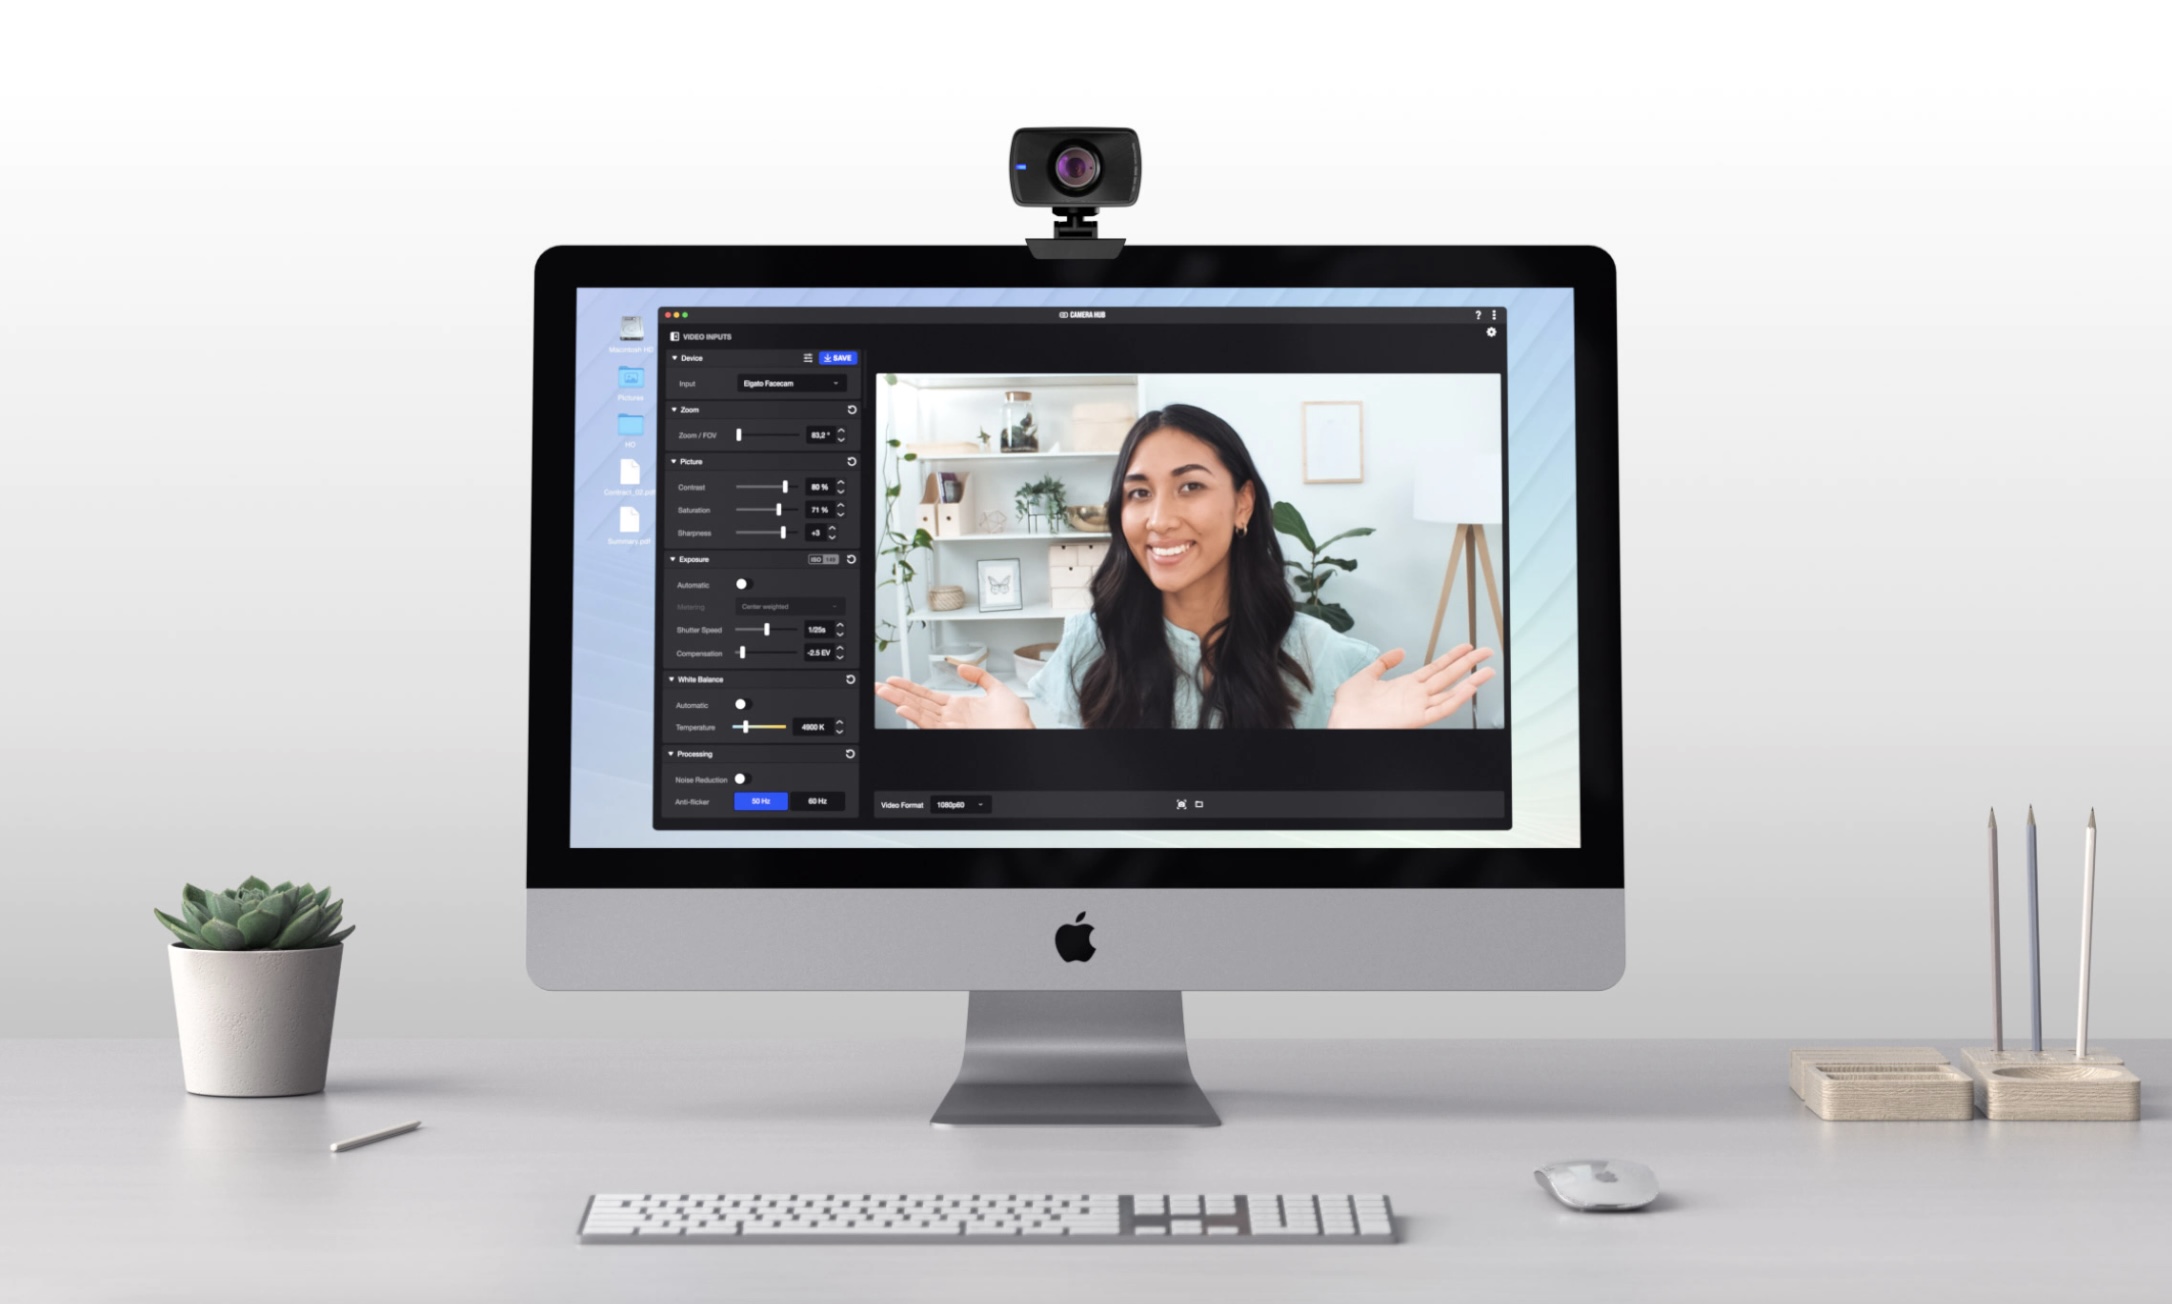 Elgato lance une webcam, une interface audio XLR et un nouveau Stream Deck